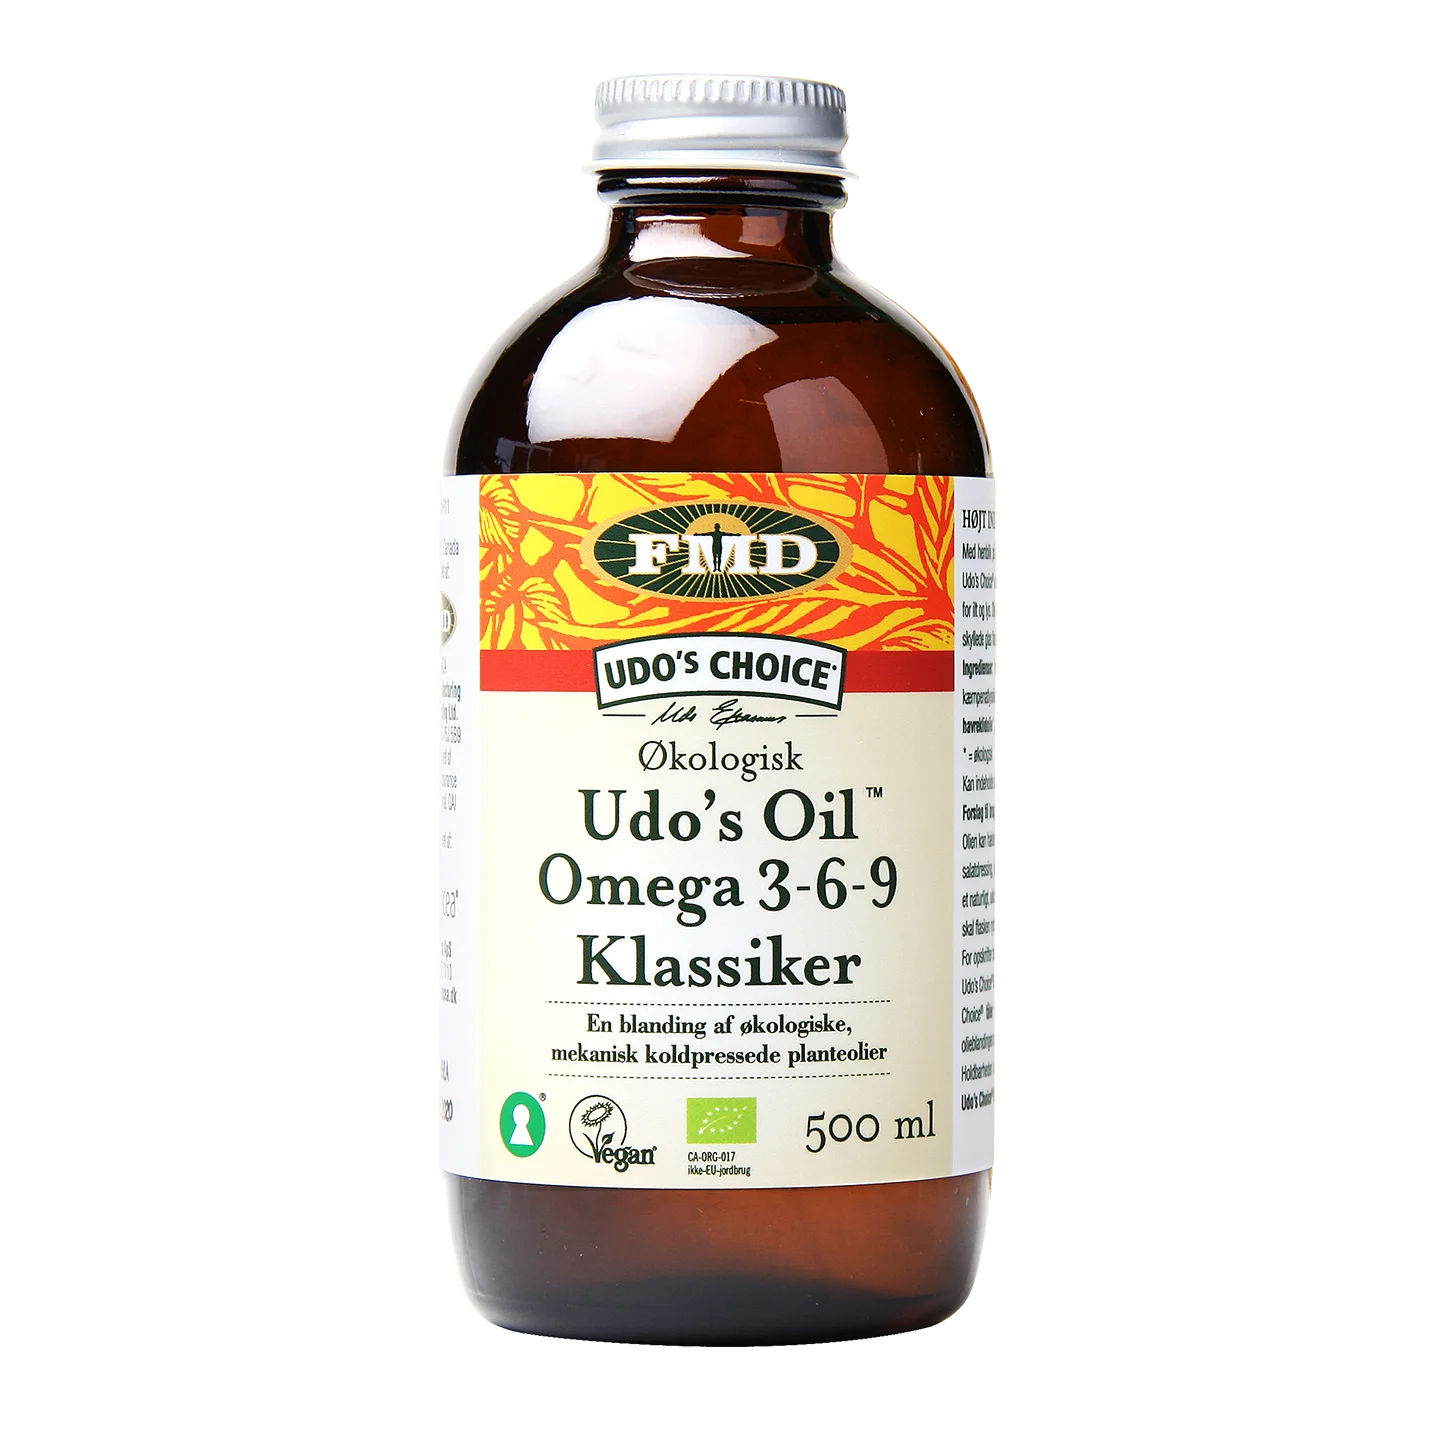 Udo's Oil (Omega 3-6-9) Økologisk